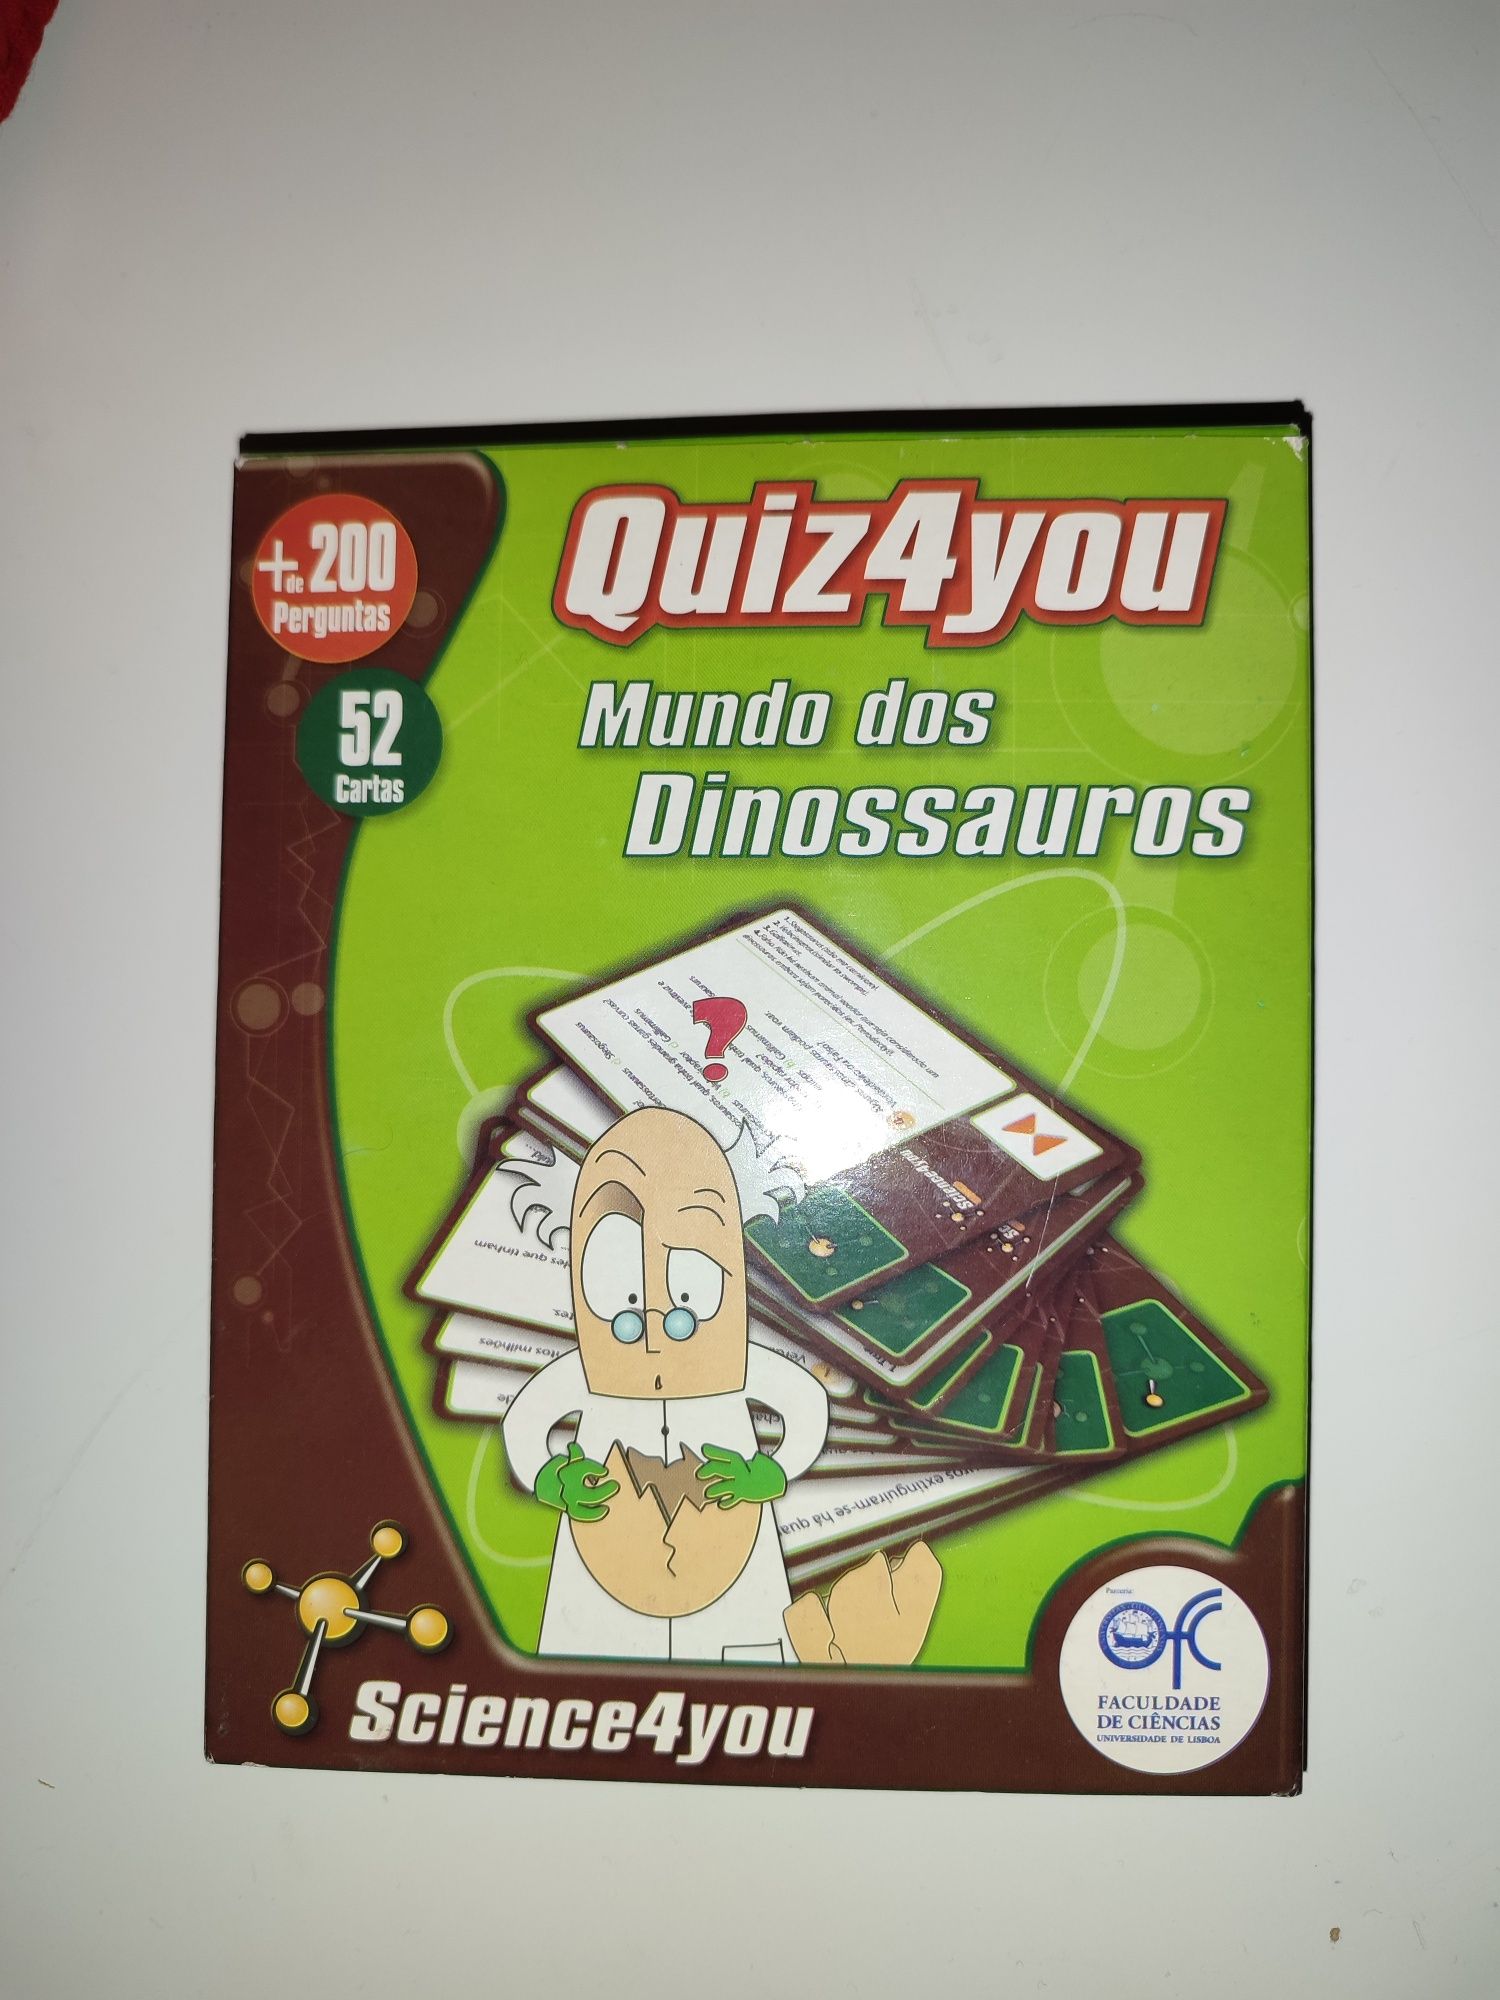 Quiz4you de dinossauros